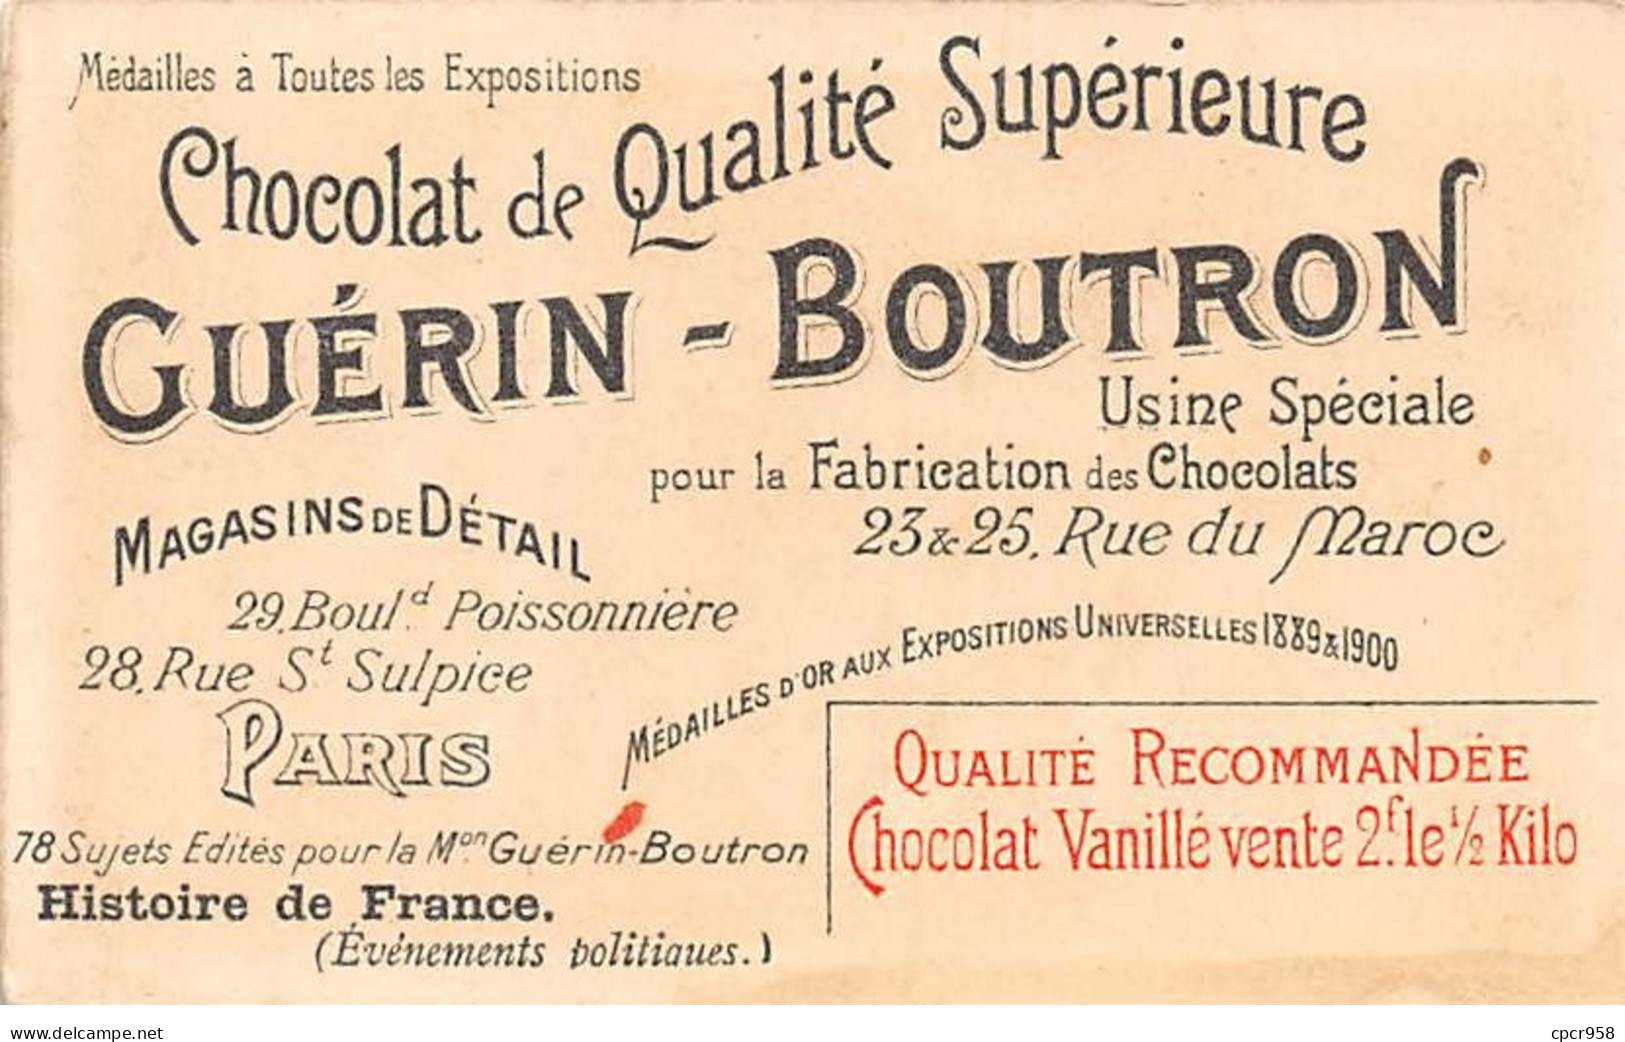 Chromos -COR11825 - Chocolat Guérin-Boutron - Le Directoire - Mont Saint-Bernard - Hommes - Ane  -  6x10cm Env. - Guerin Boutron